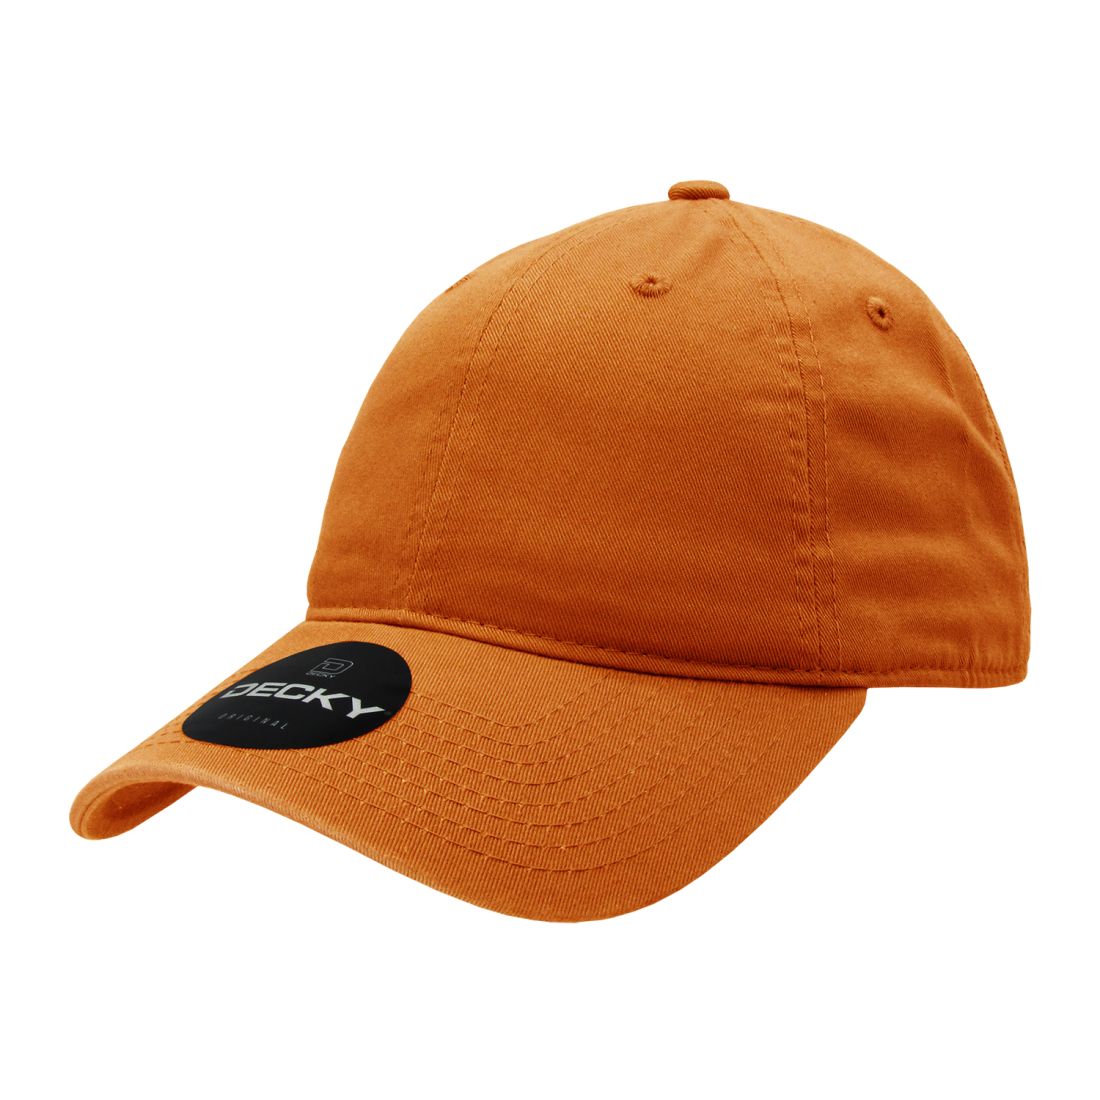 Burnt Orange color variant